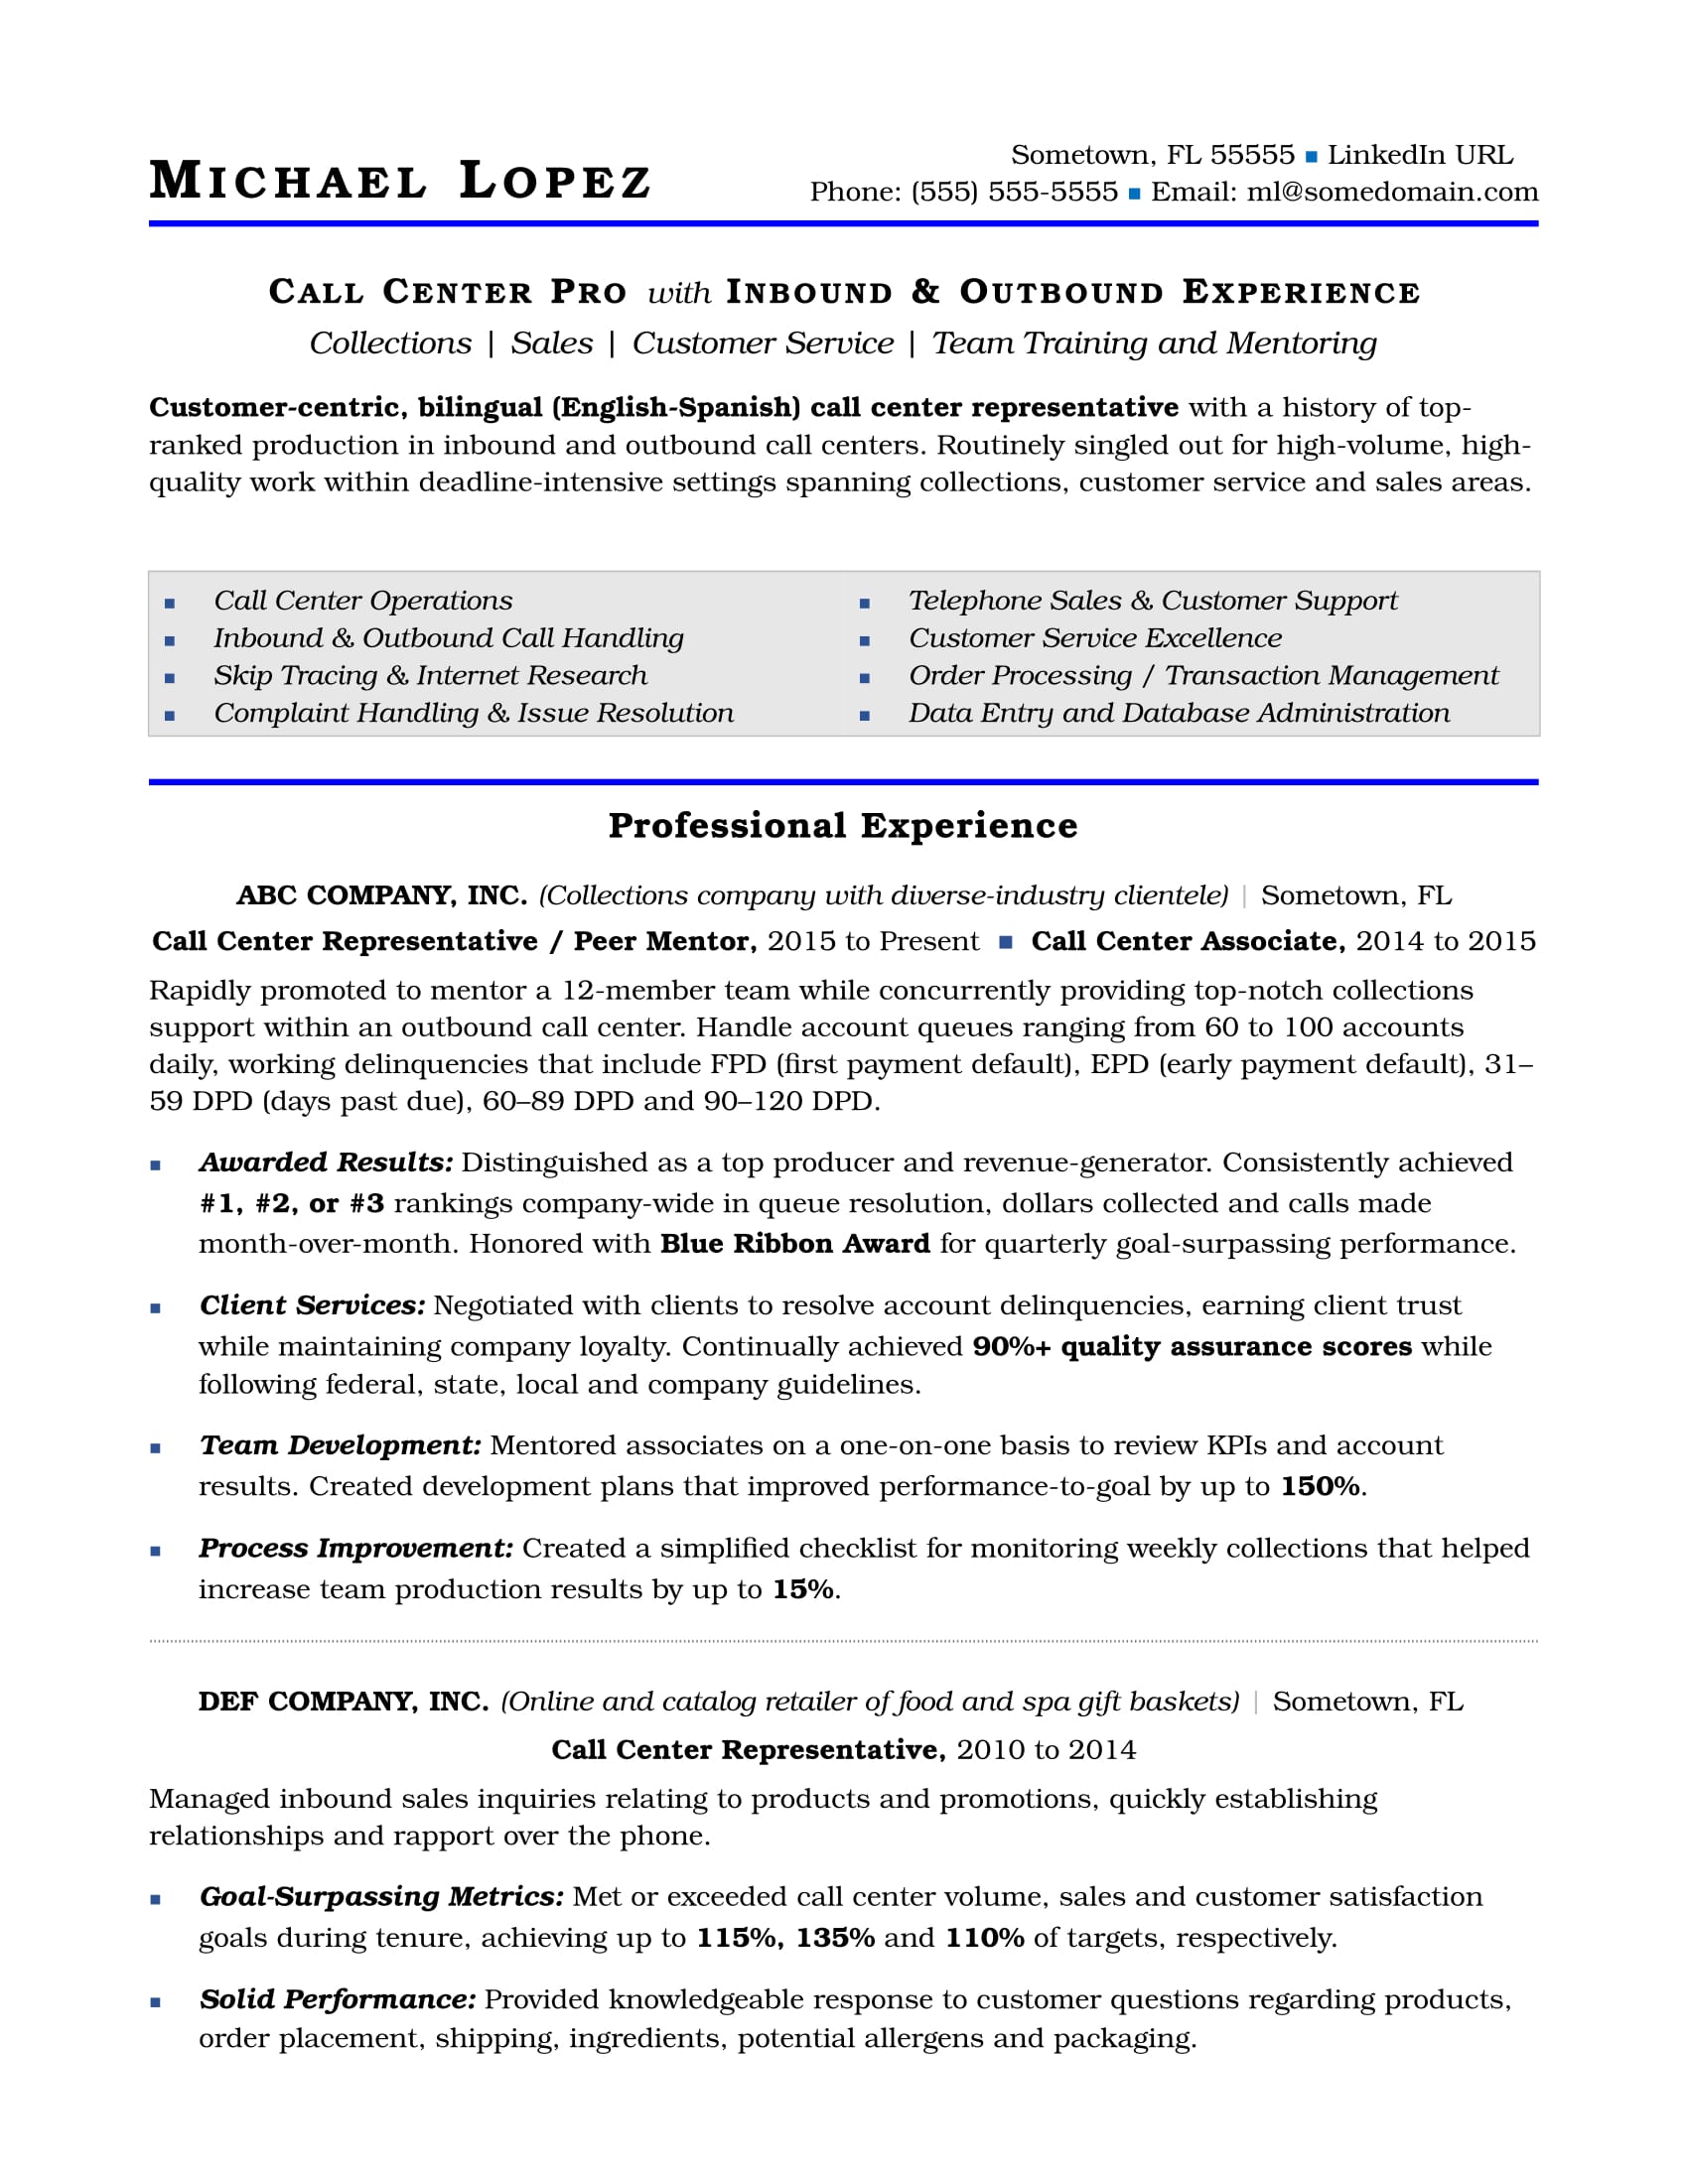 Call Center Resume Sample  Monster.com